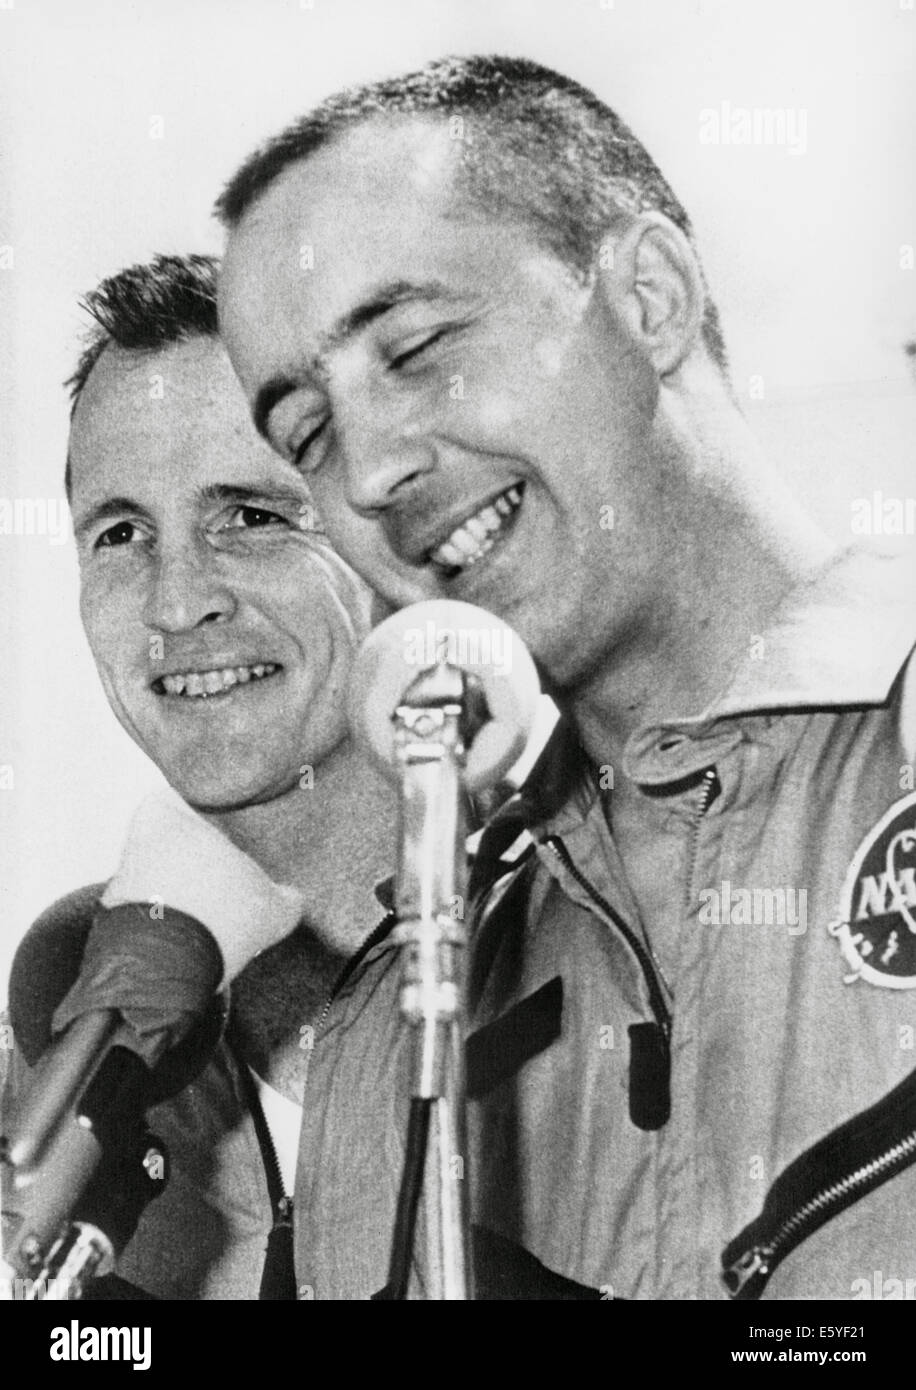 Les astronautes de la NASA James McDivitt (R) et Edward White II à la conférence de presse à l'issue de la Mission spatiale Gemini IV, 1965 Banque D'Images